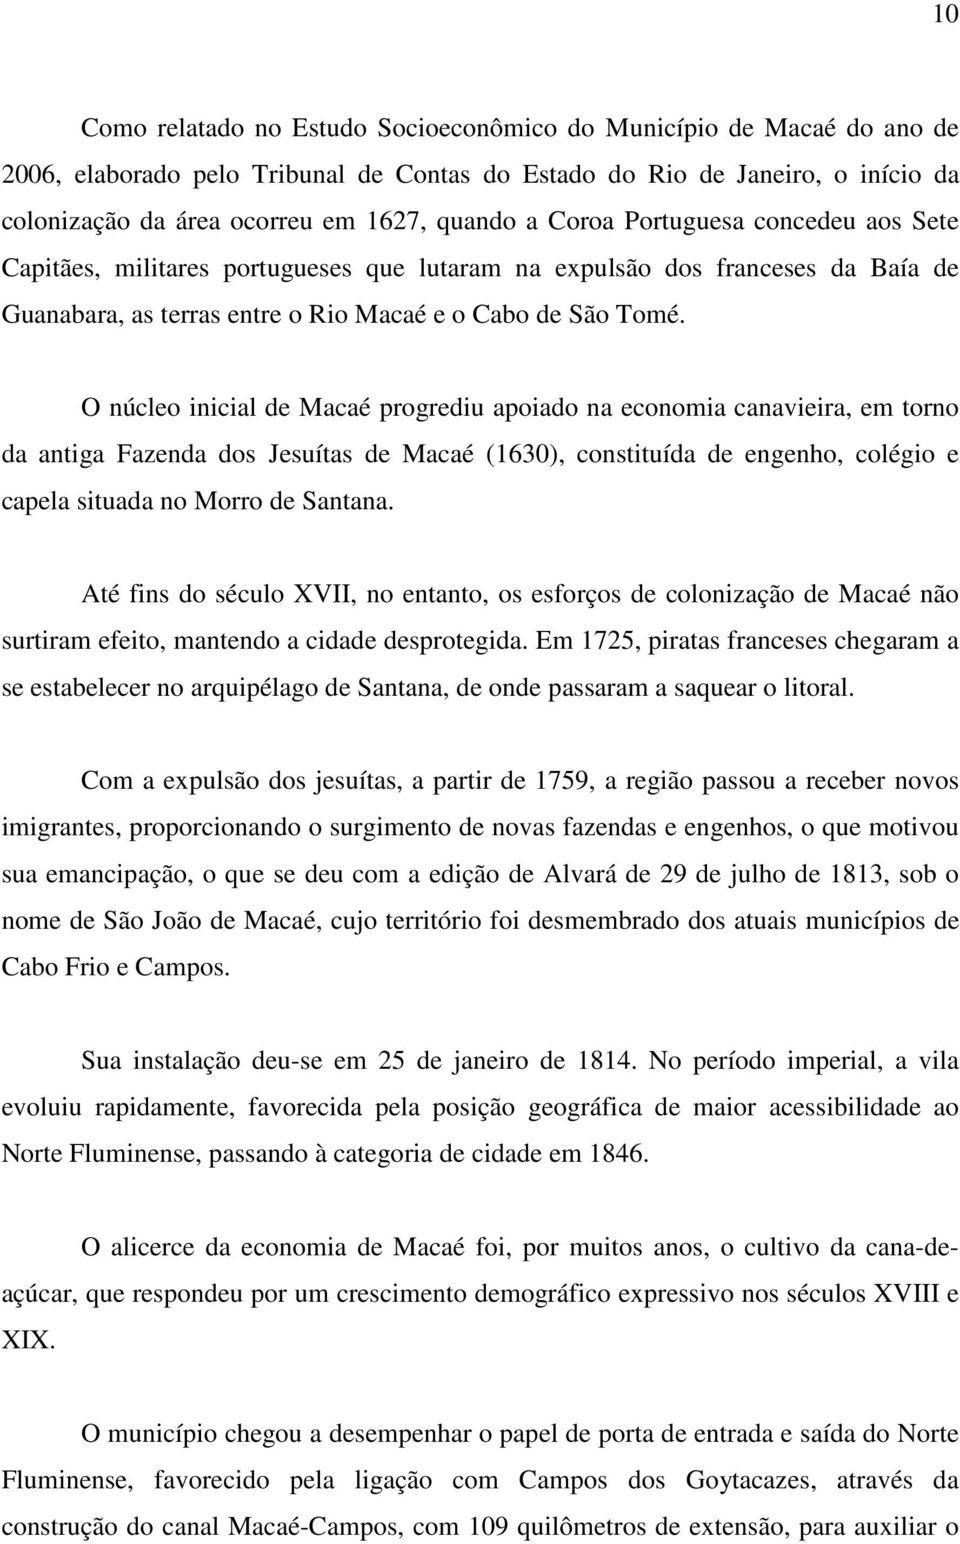 O núcleo inicial de Macaé progrediu apoiado na economia canavieira, em torno da antiga Fazenda dos Jesuítas de Macaé (1630), constituída de engenho, colégio e capela situada no Morro de Santana.